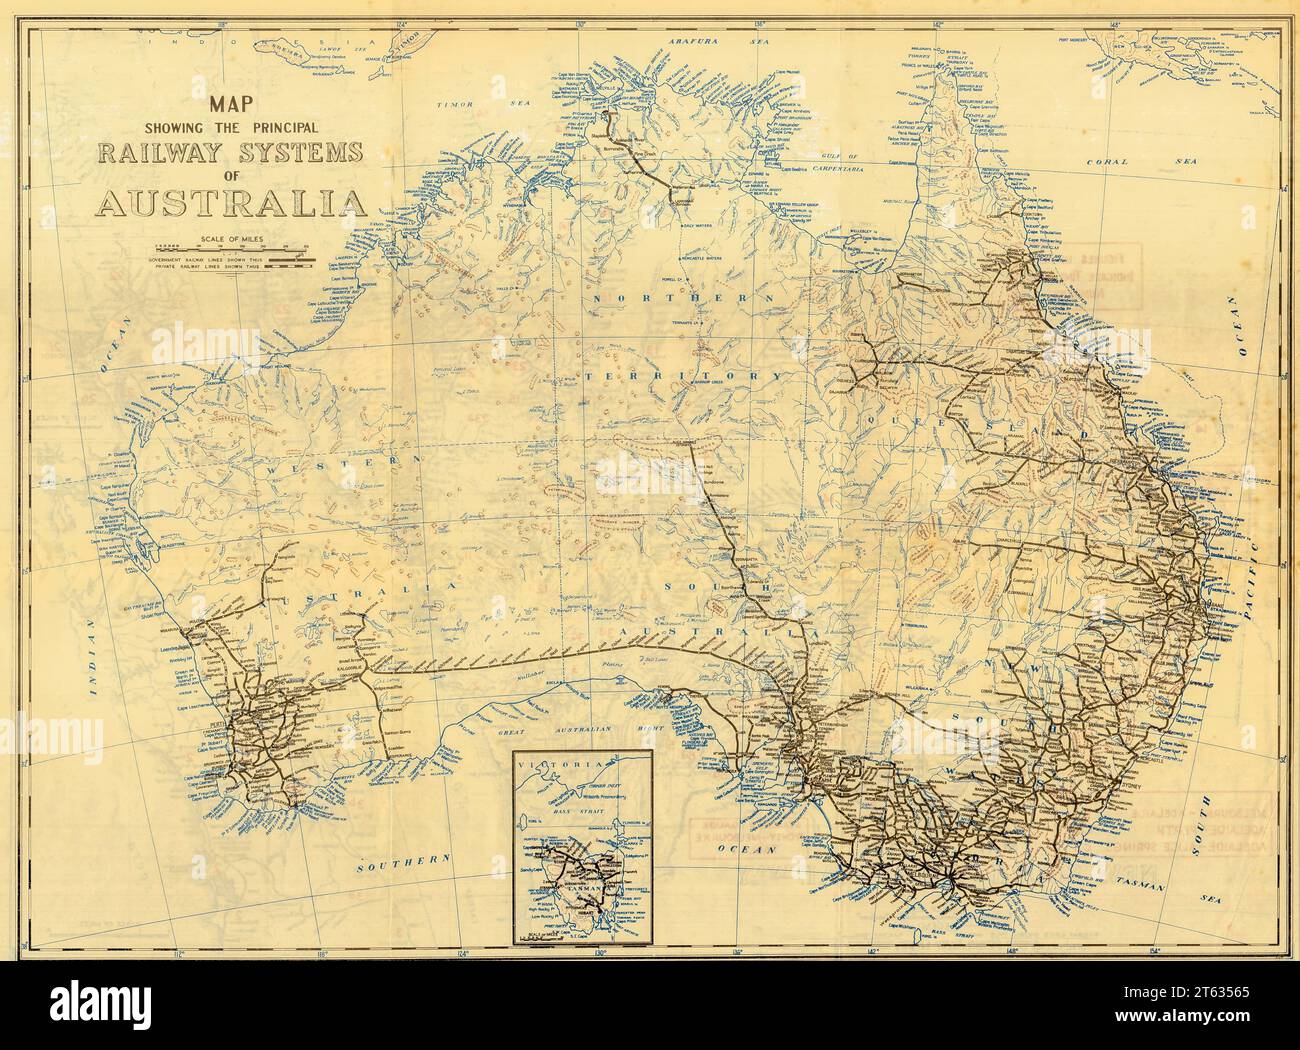 Une carte physique historique des années 1960 de l'Australie montrant toutes les lignes de chemin de fer. La carte dépliable au format A3 (environ) a été publiée dans le cadre de l'Atlas Collins Australian Clear School, Brodie, F (éditeur) Banque D'Images